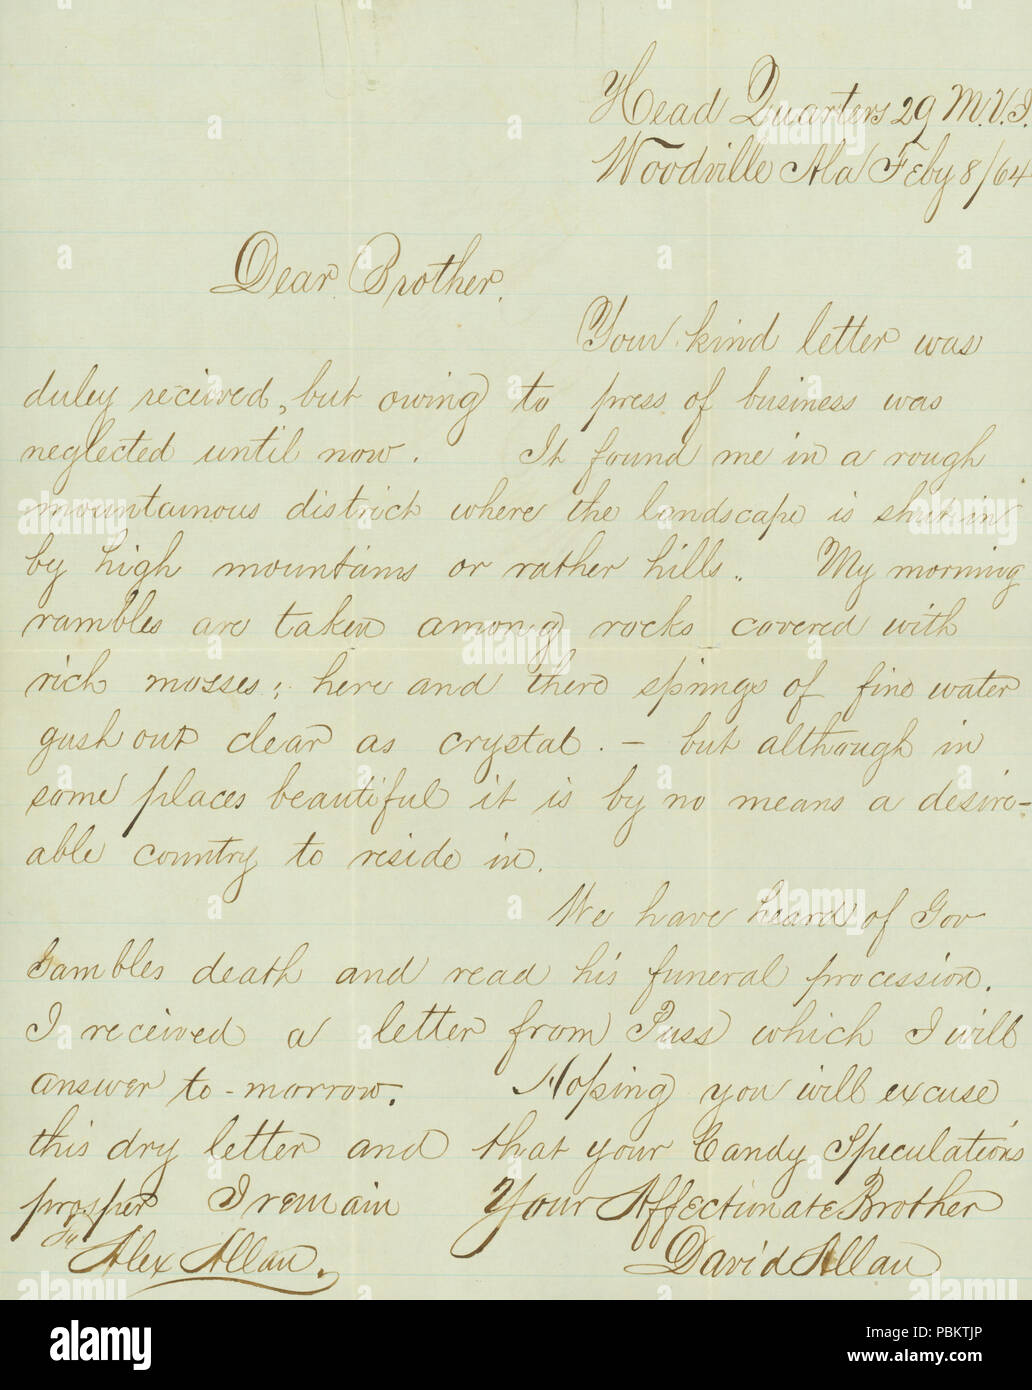 906 Lettre signée David Allan, Head Quarters 29e M.V.I., Woodville, Ala., à son frère, Alex Allan, le 8 février 1864 Banque D'Images